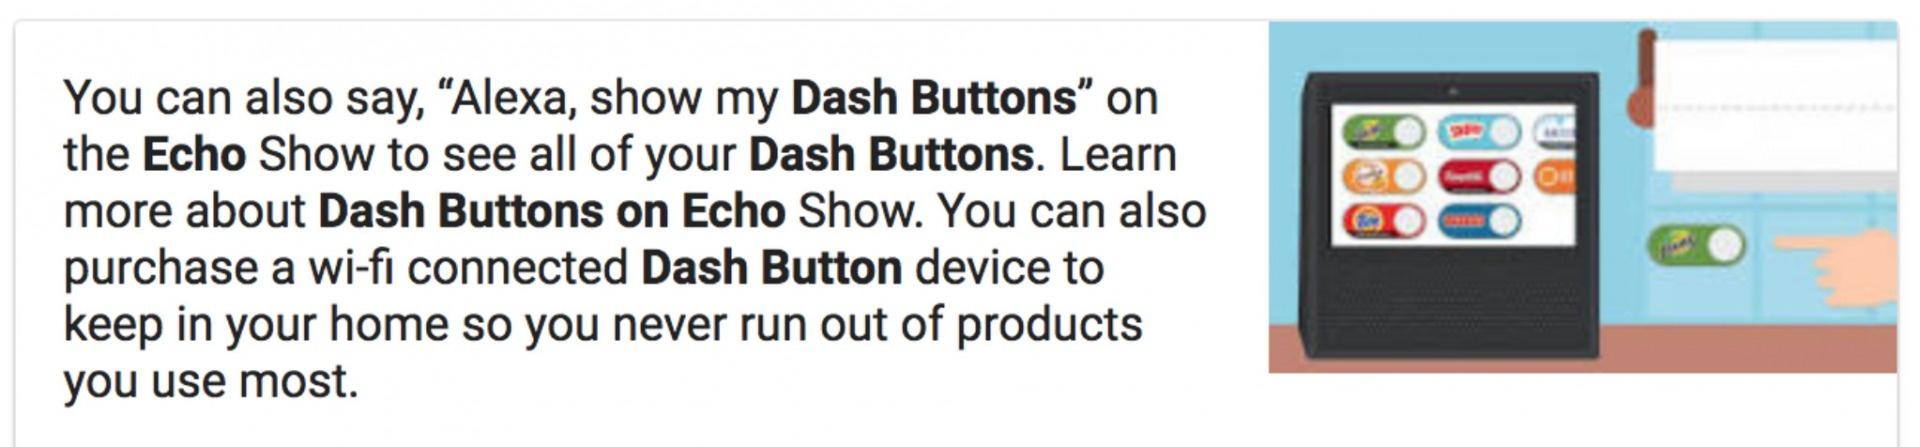 Dash_Buttons.jpeg